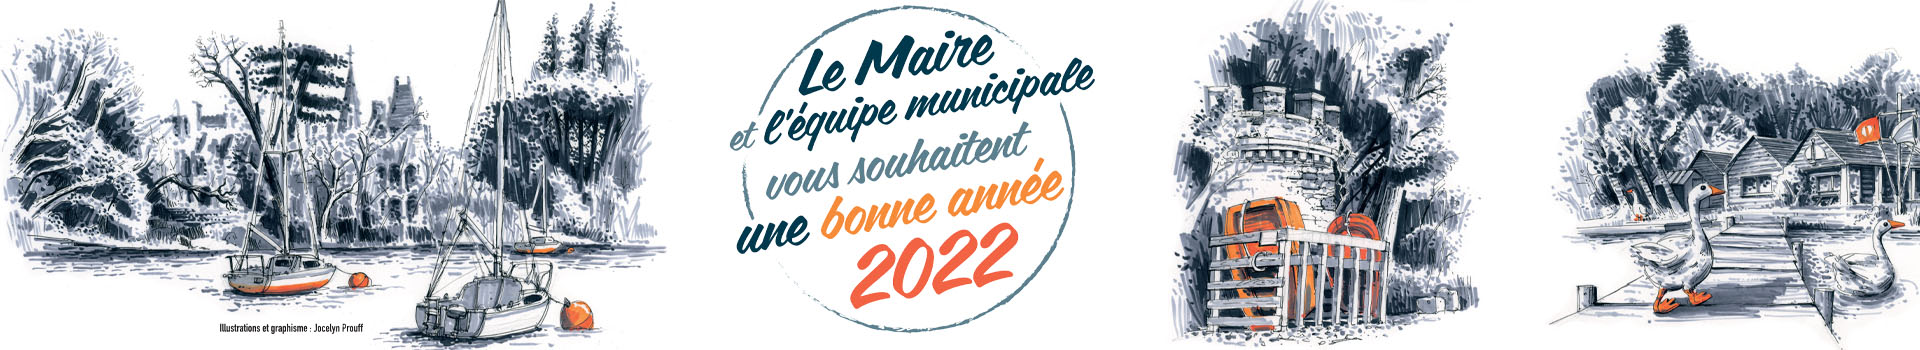 LE MAIRE ET L'ÉQUIPE MUNICIPALE VOUS SOUHAITENT UNE BONNE ANNÉE 2022